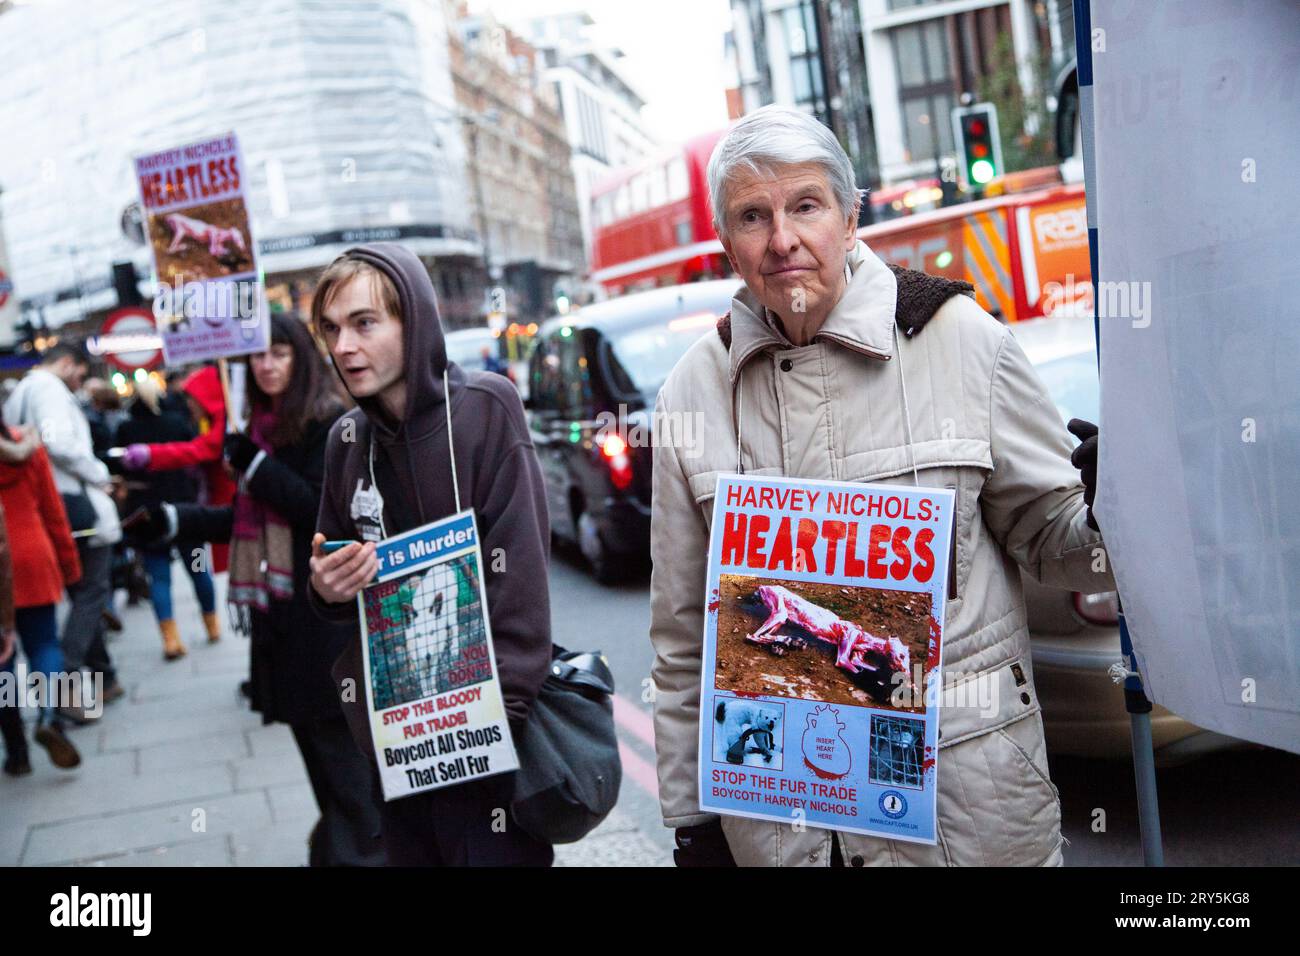 Protesta anti-pelliccia per i diritti degli animali fuori Harvey Nichols Londra 30 novembre 2013 - vecchio che indossa il cartello Heartless Harvey Nichols Foto Stock